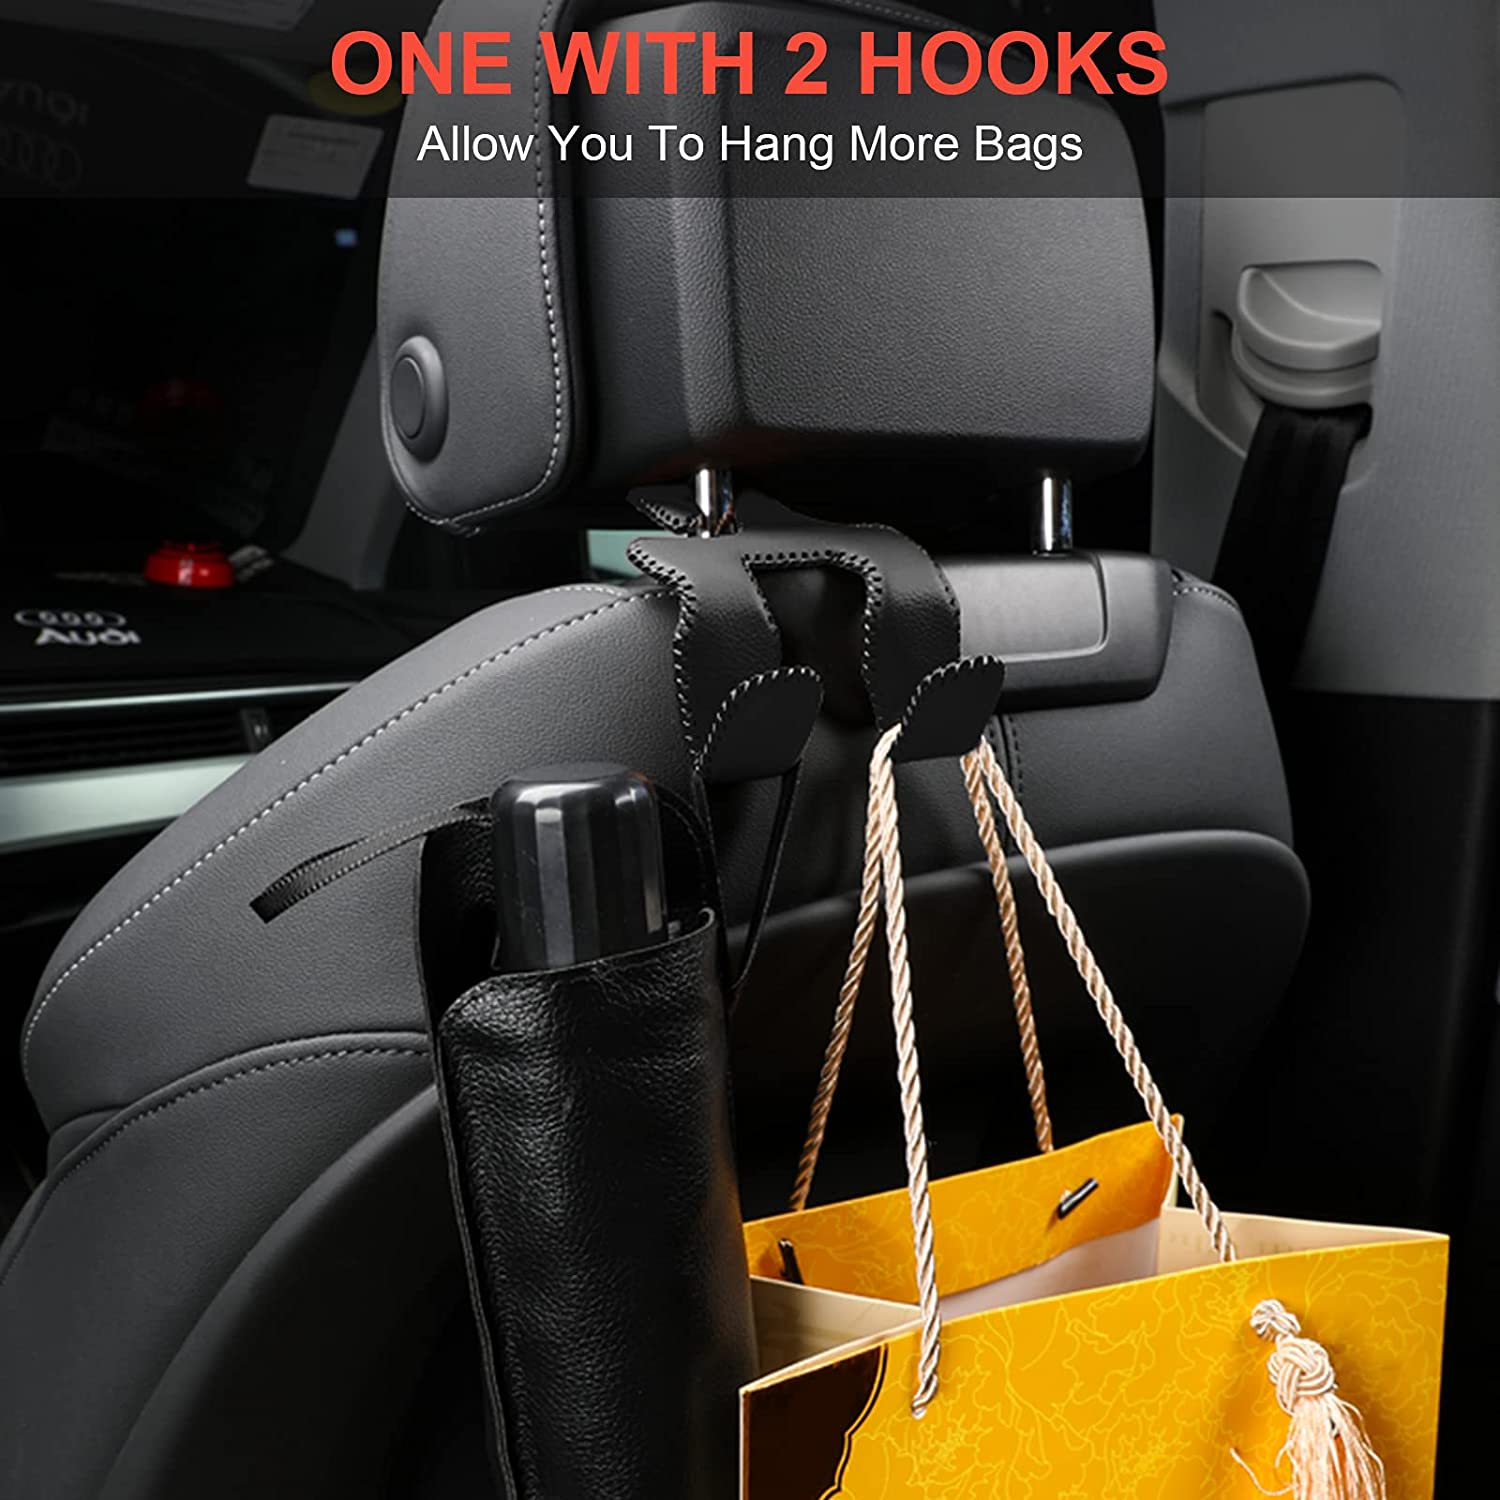 Car•go Handbag Hook Review - The Gadgeteer